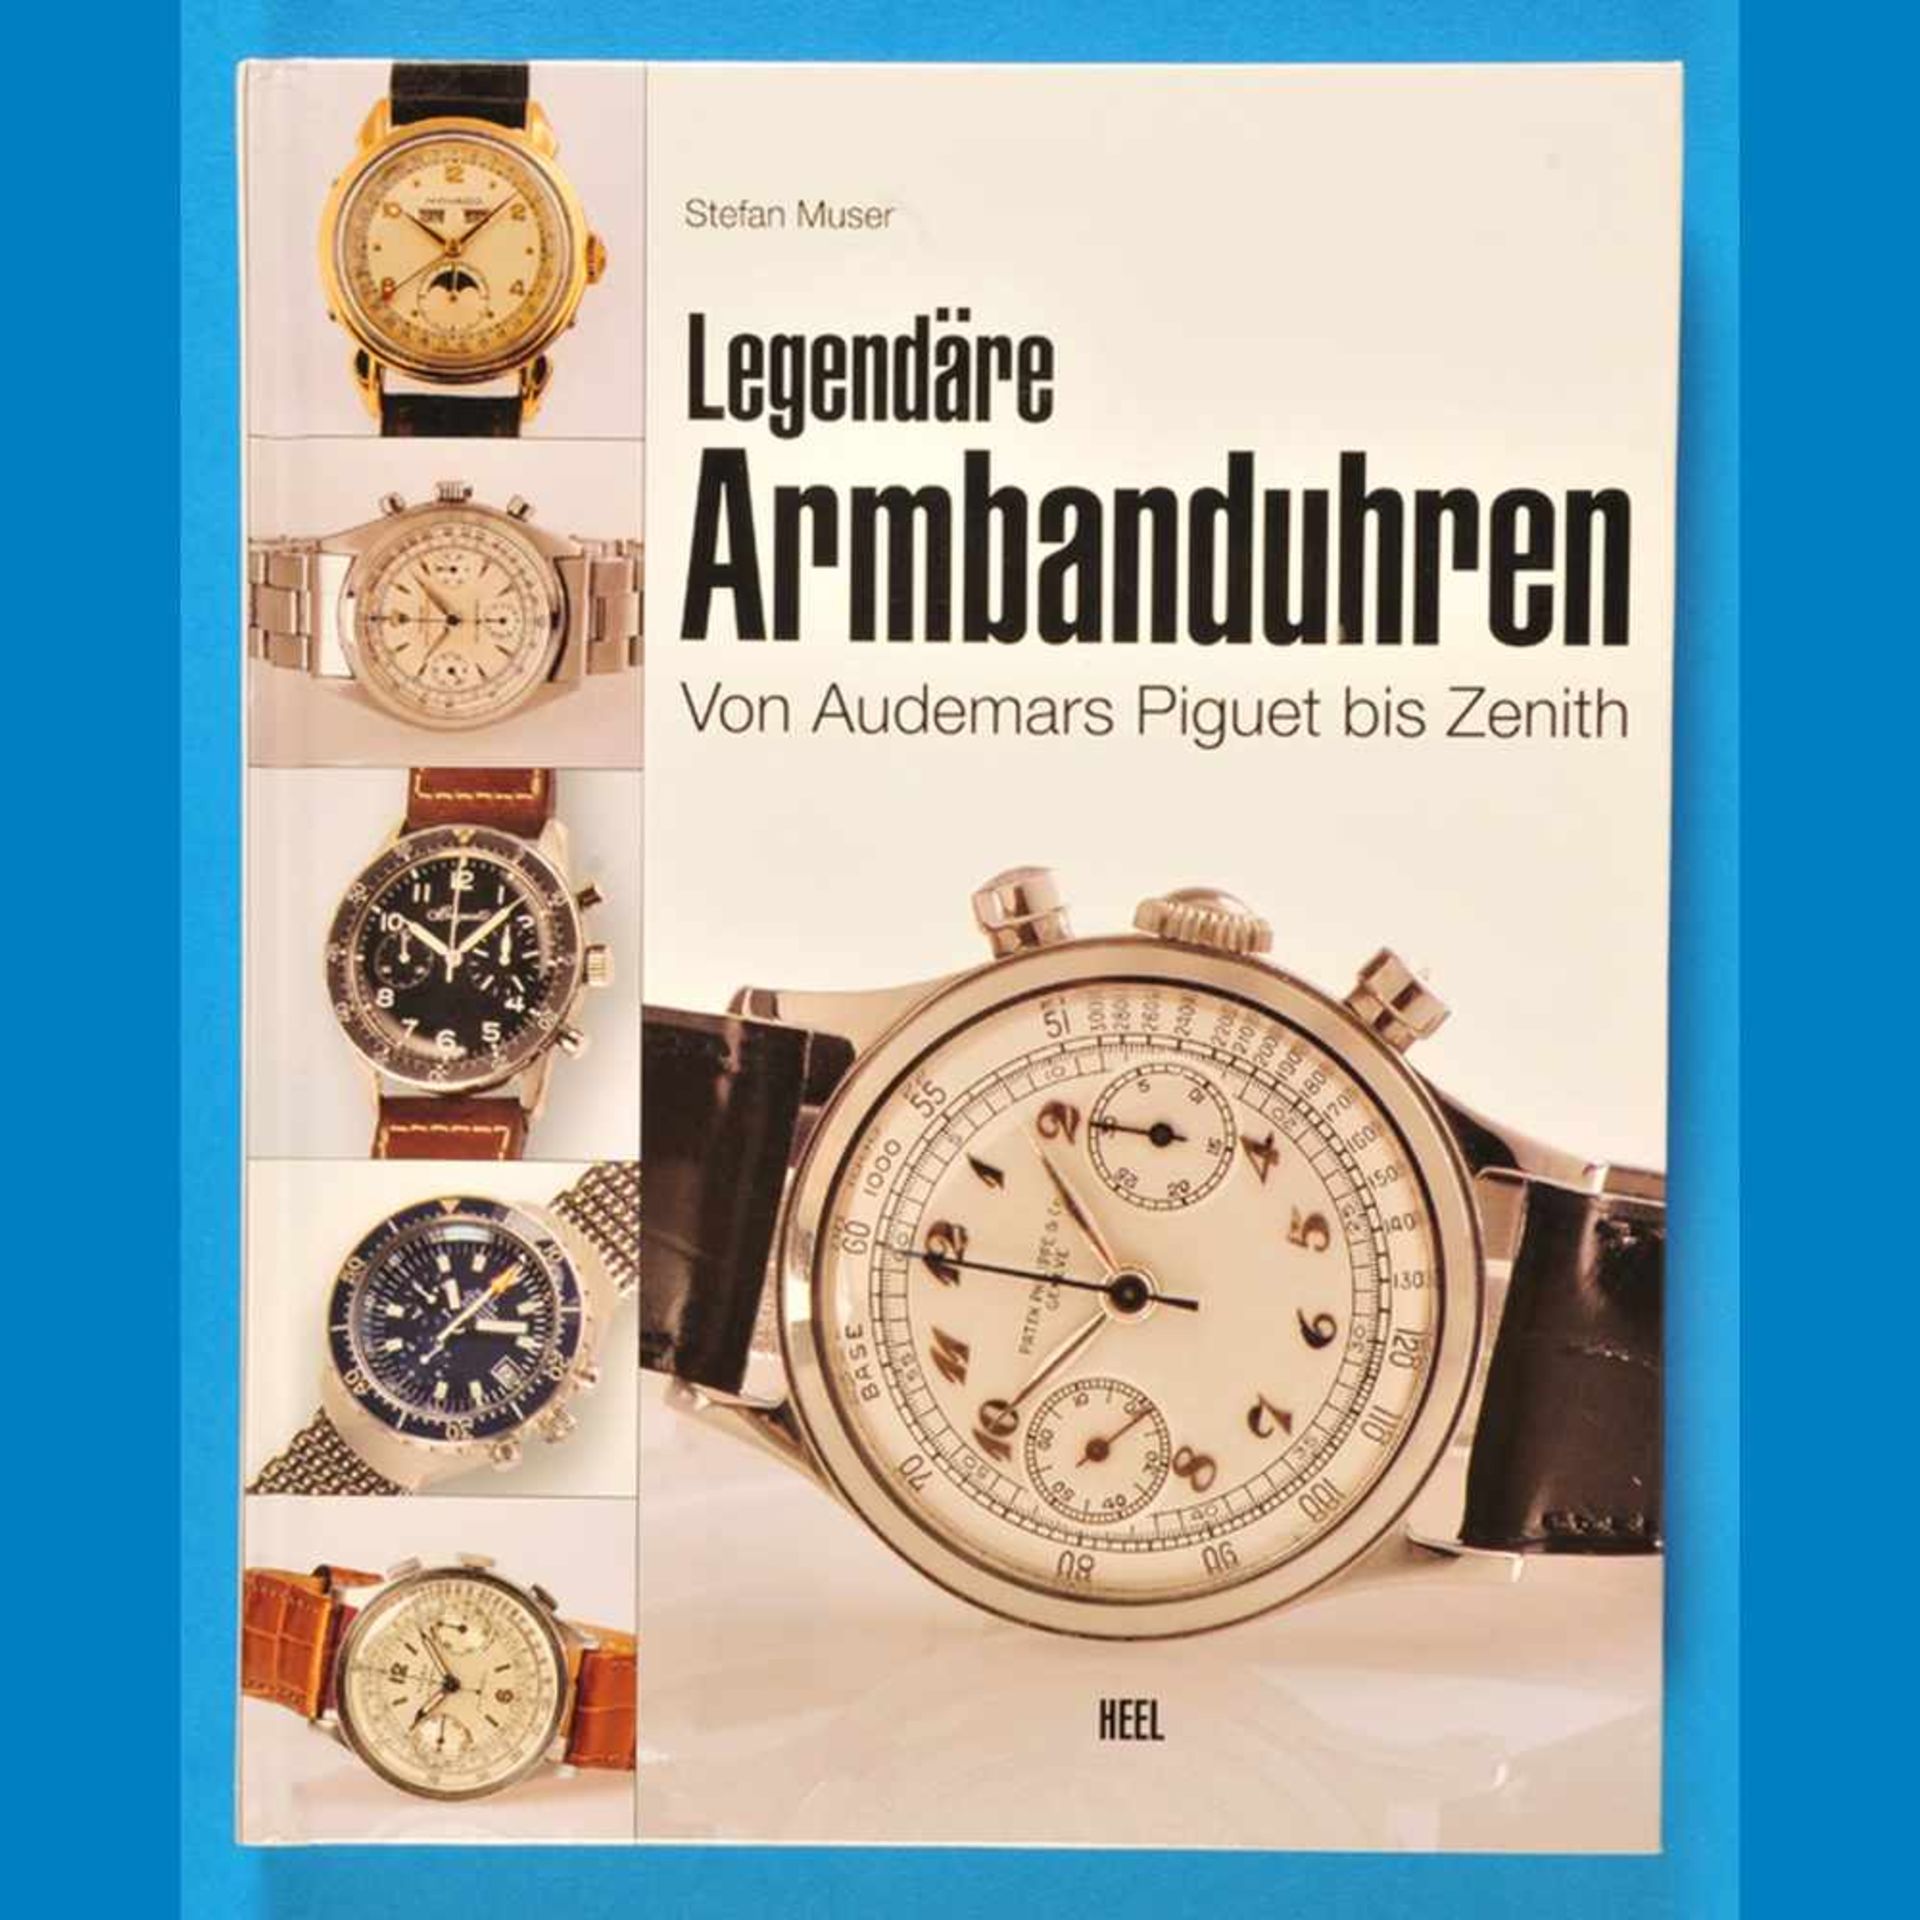 Stefan Muser, Legendäre Armbanduhren, von Audemars Piquet bis Zenith, 2010Stefan Muser, Leg